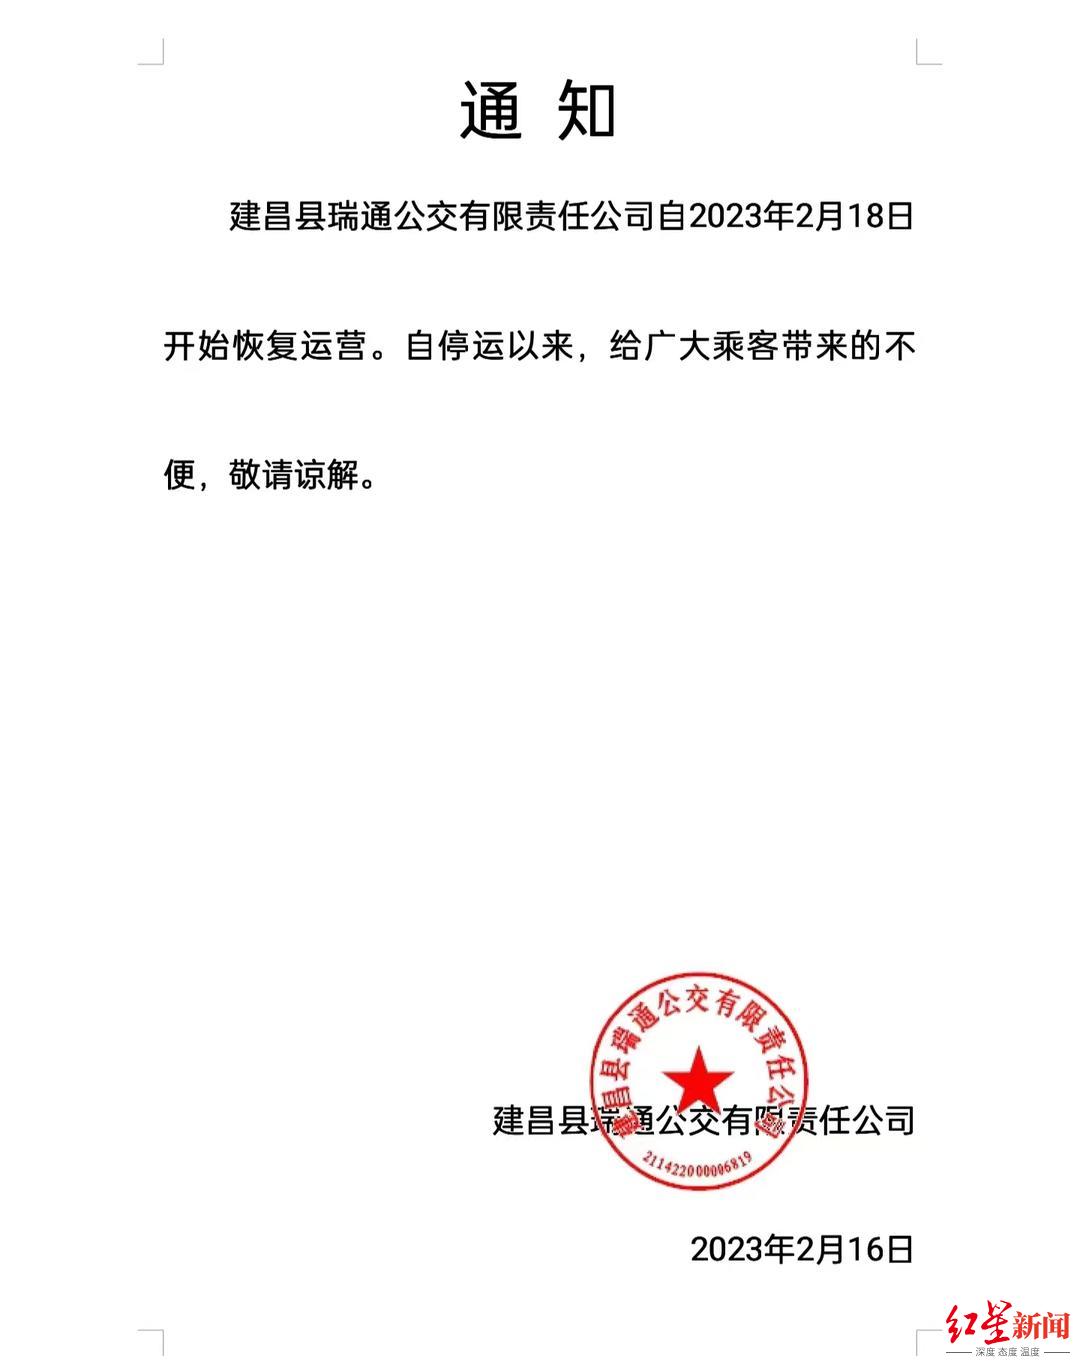 建昌瑞通公交公司宣布恢复运营。